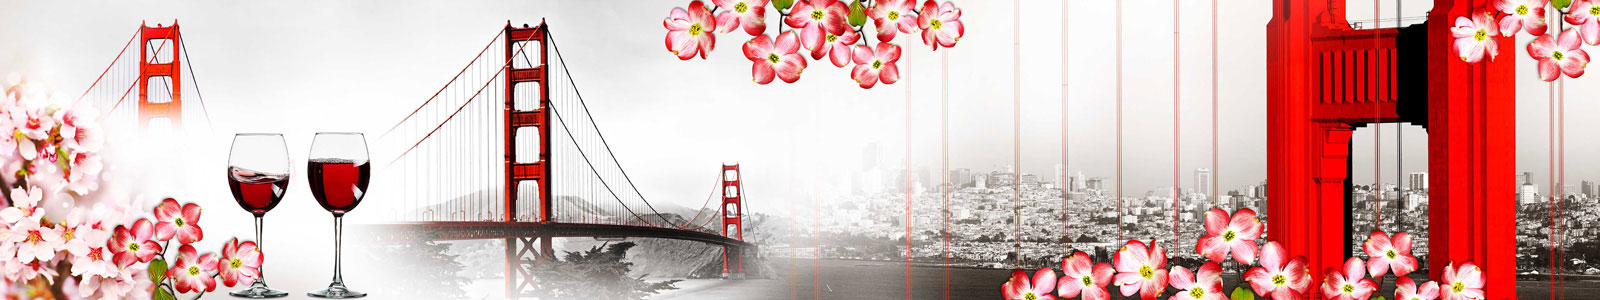 №4390 - Цветение красного кизила с видом на Мост в Сан-Франциско